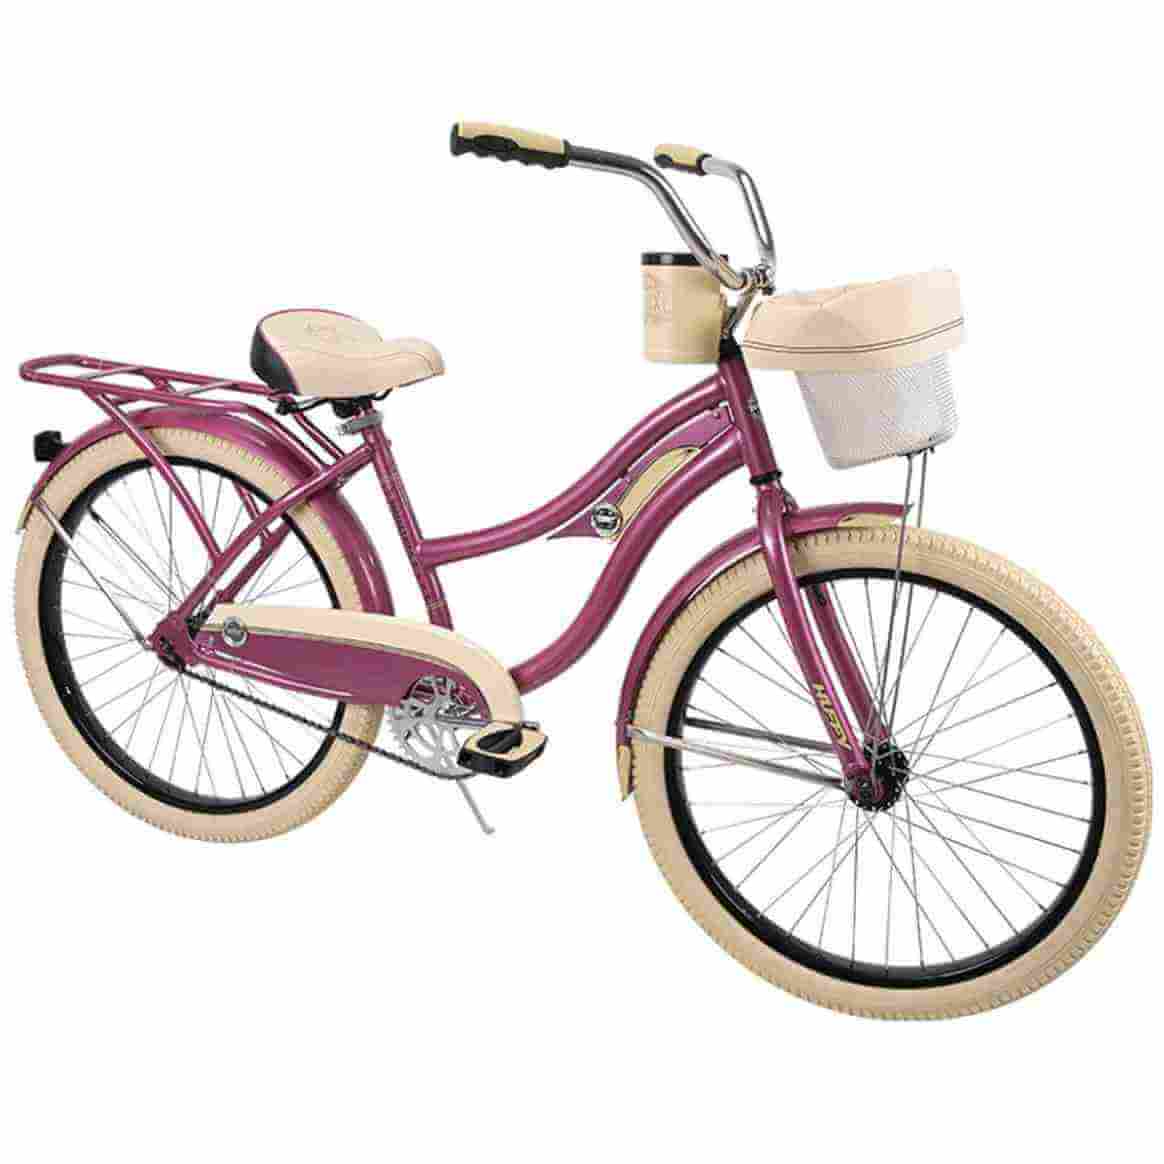 Oferta Sears: Bicicleta rosa tipo crucero